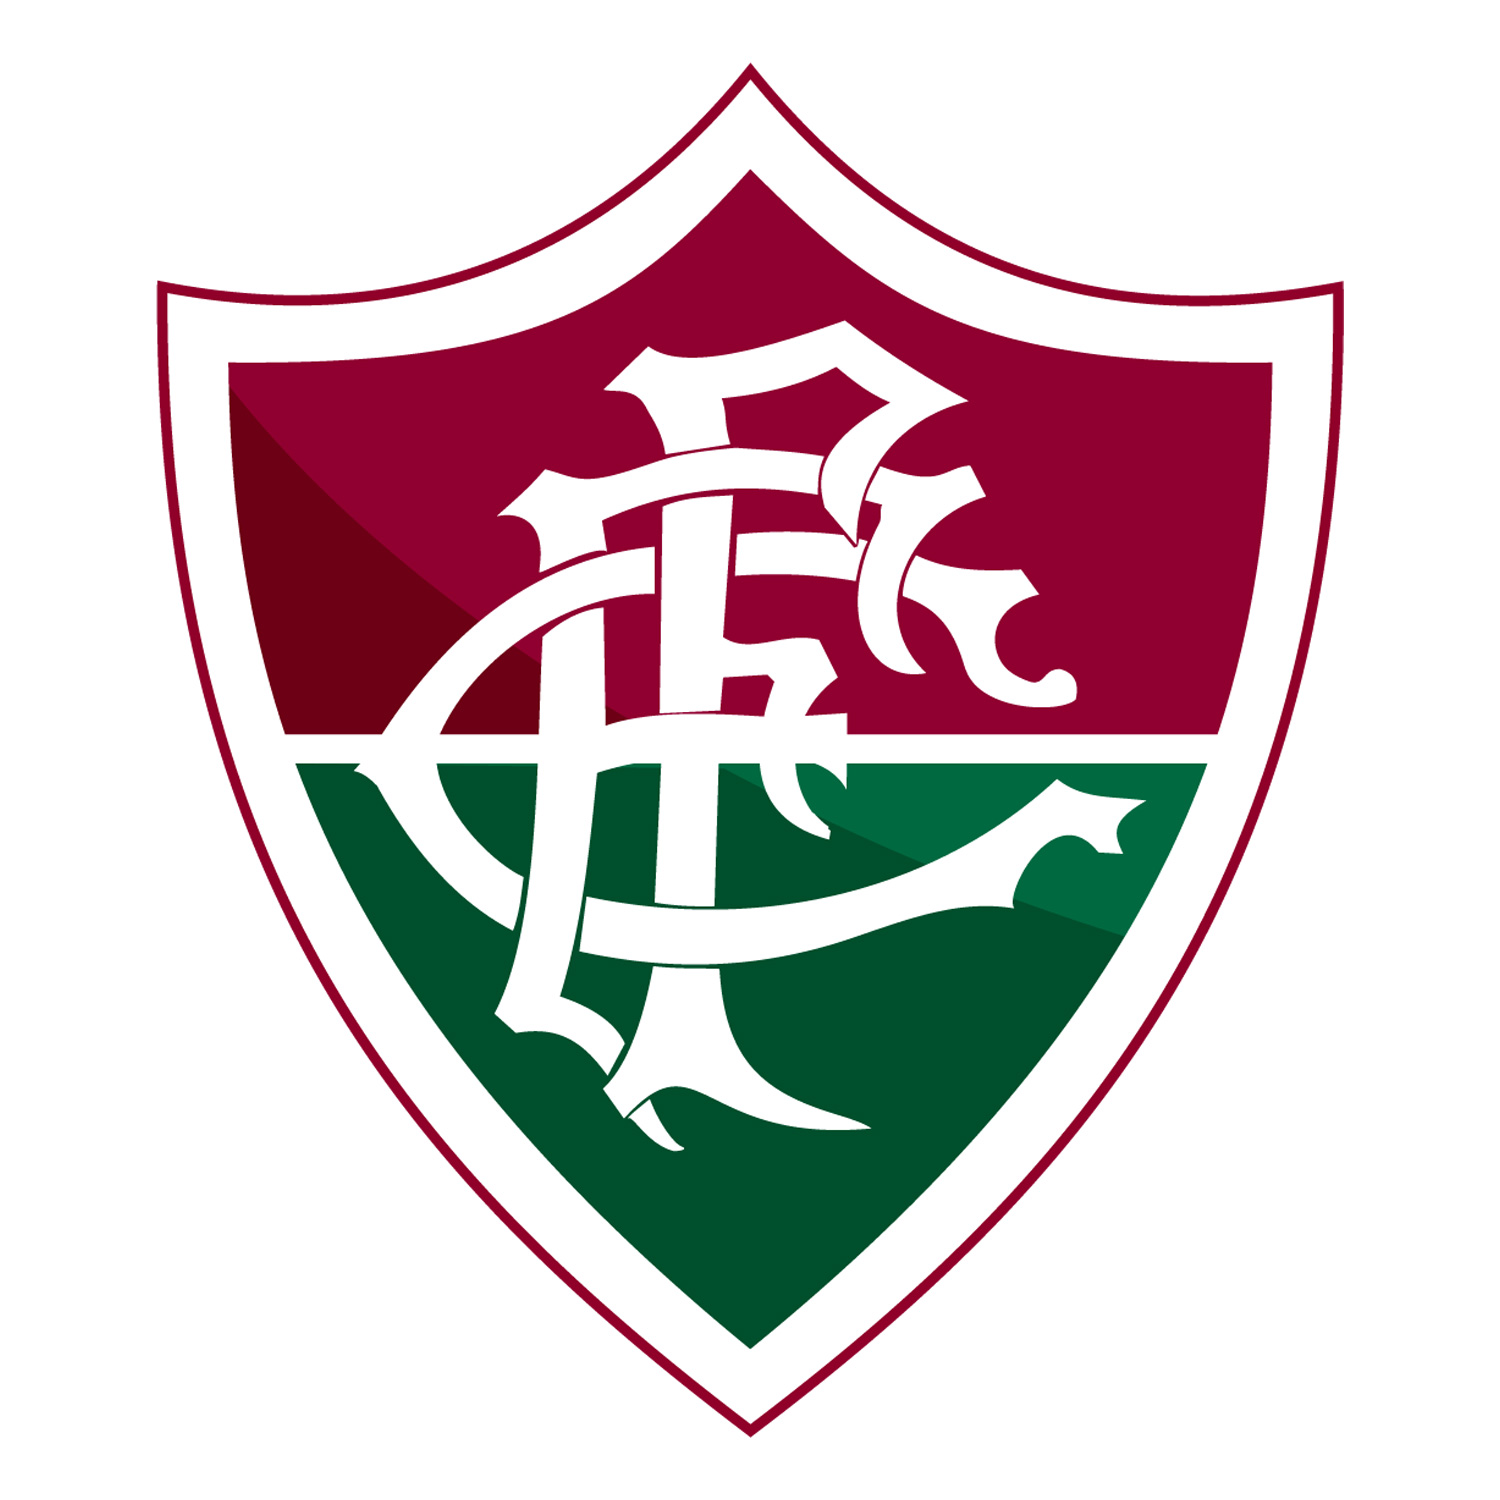 Fluminense Logo, escudo.